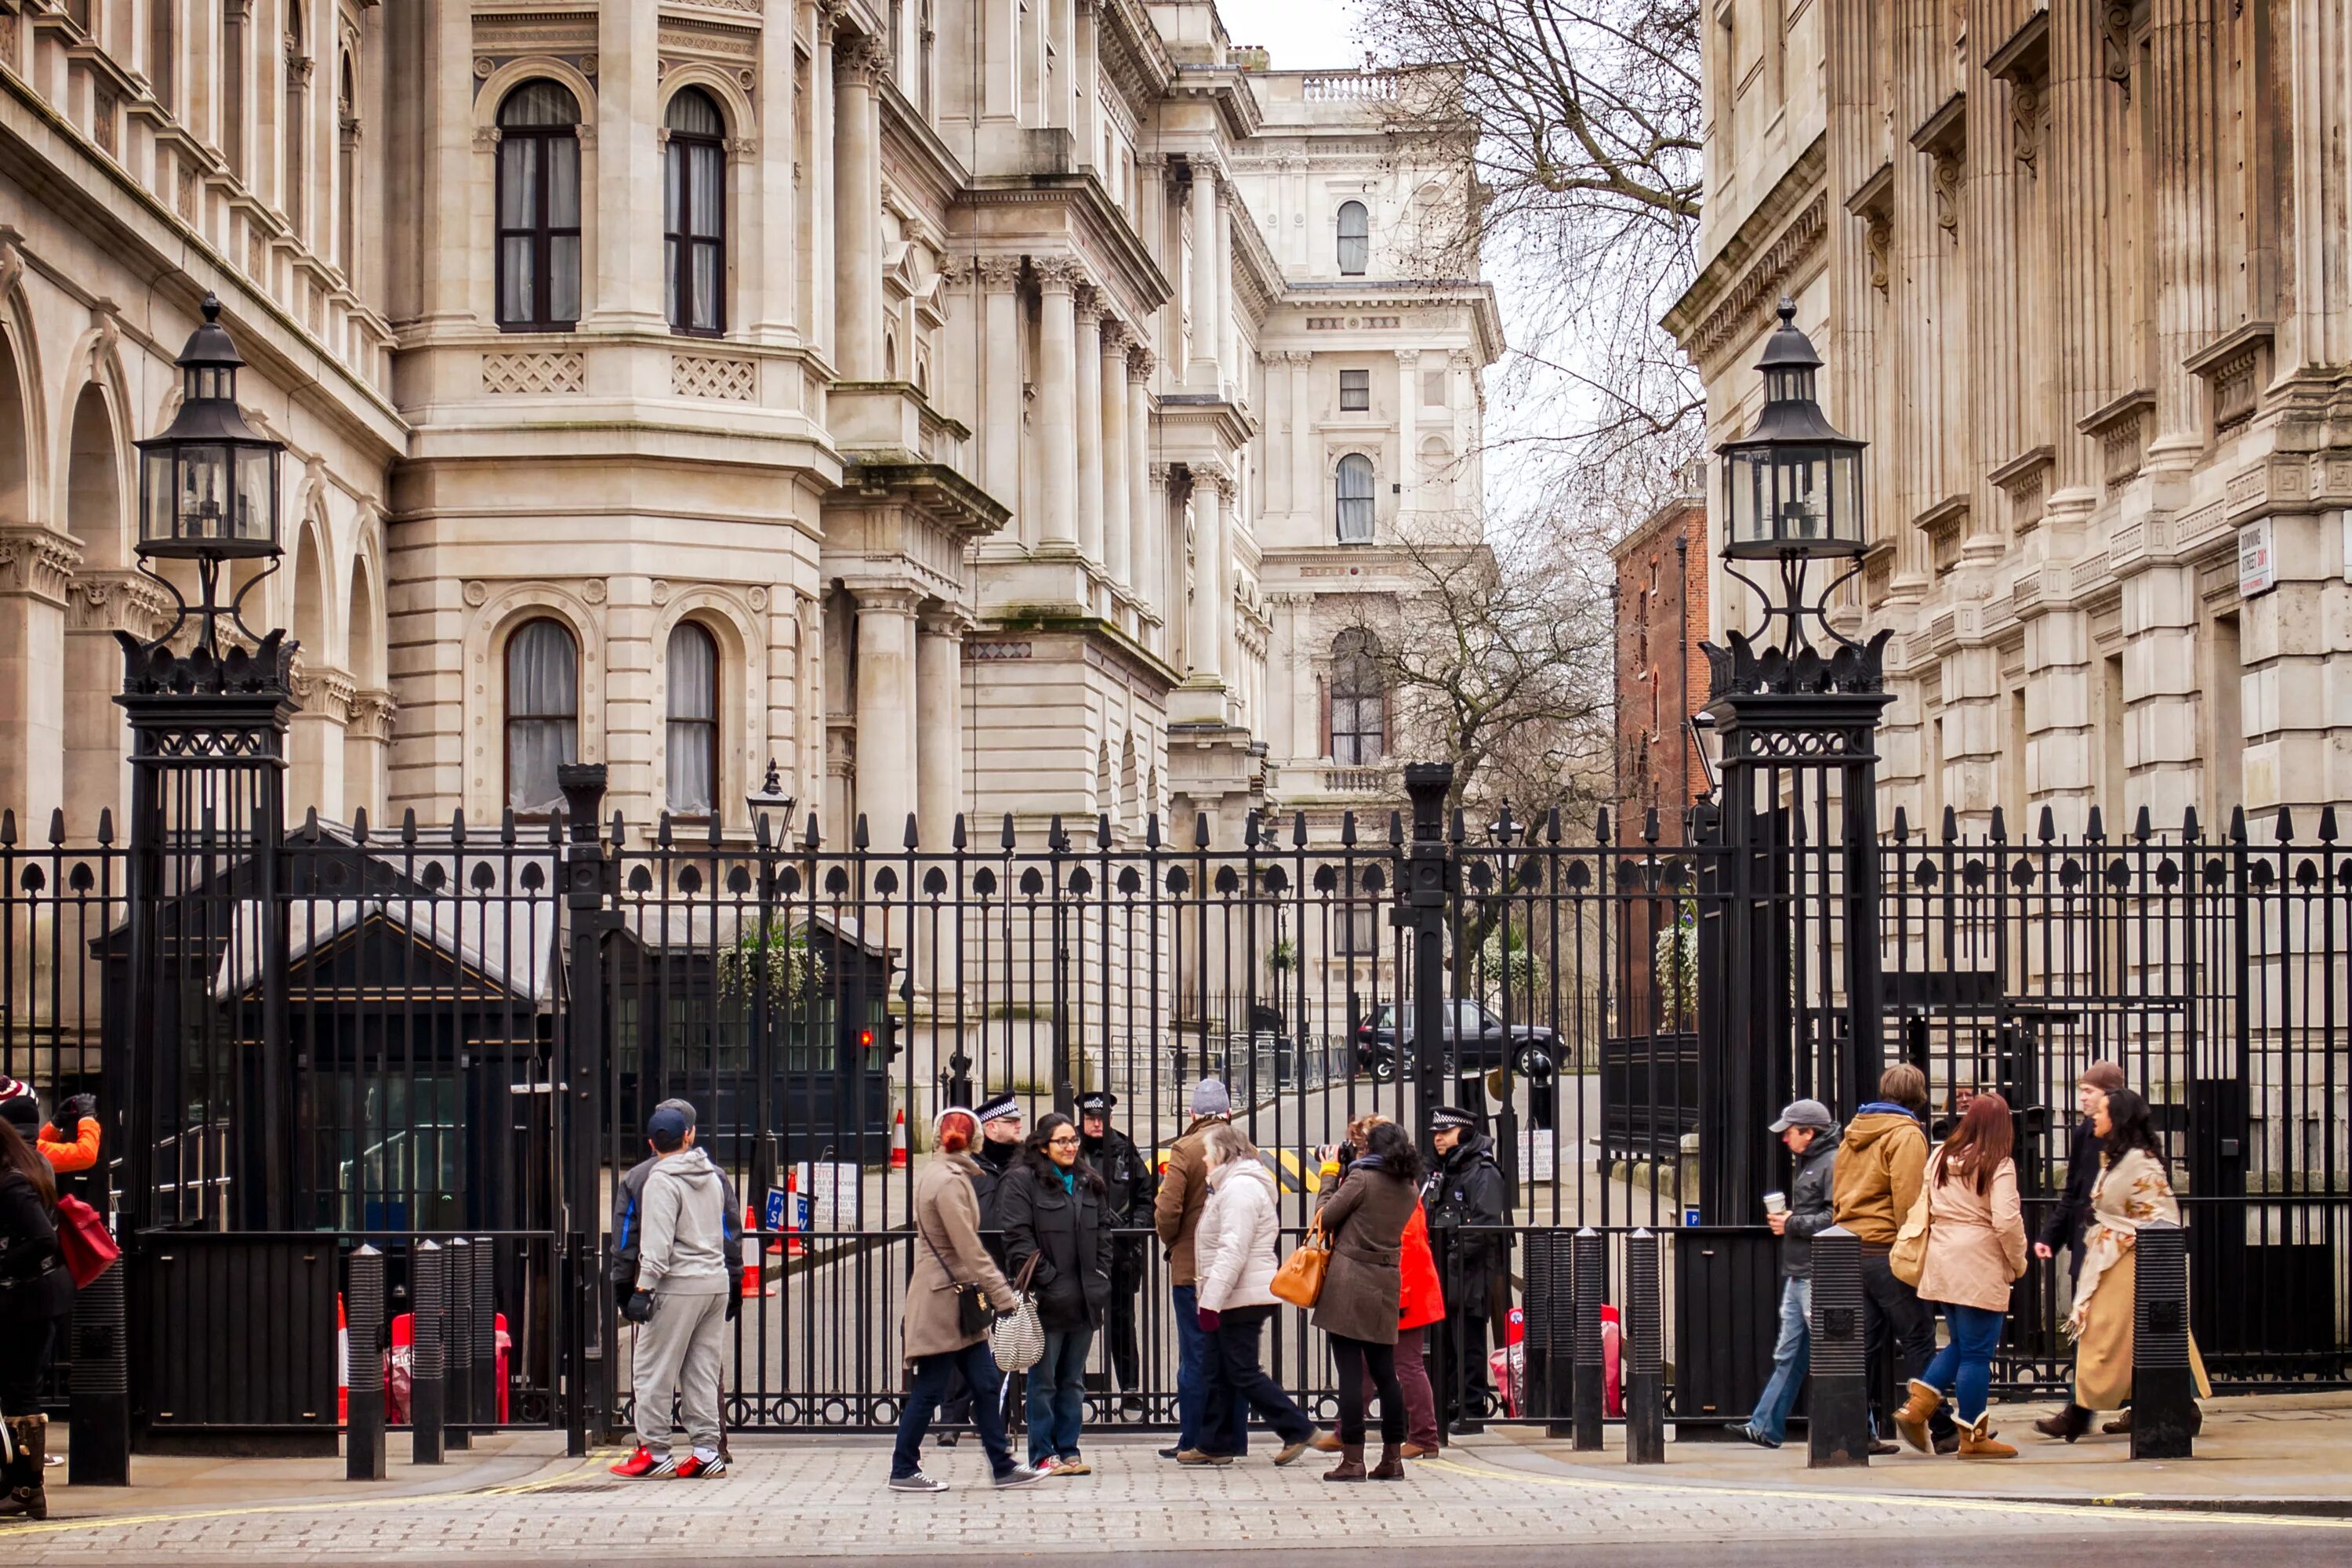 Даунинг-стрит 10 в Лондоне. Улица Даунинг стрит в Лондоне. Резиденция премьер-министра Великобритании в Лондоне. Даунинг стрит 10 Лондон ворота.